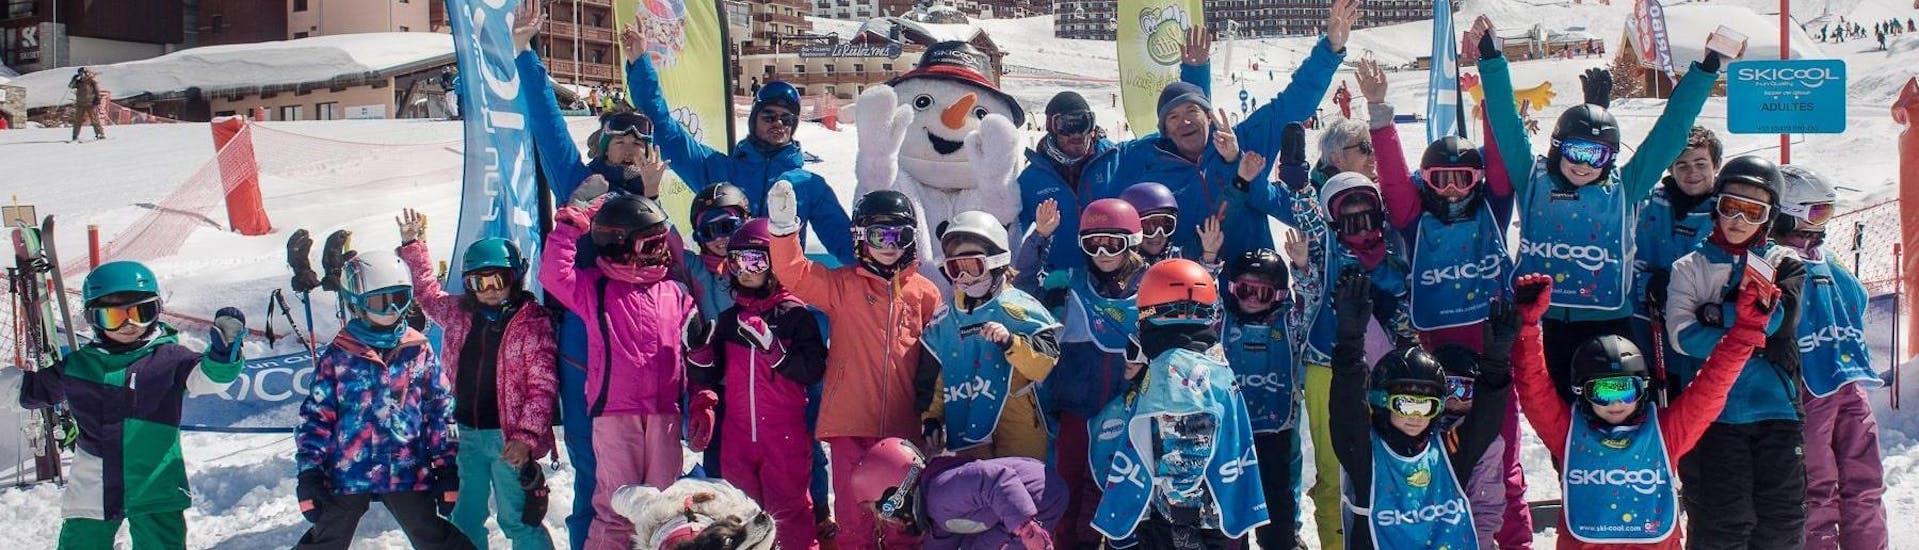 Un gruppo di bambini è entusiasta di iniziare le lezioni di sci con la scuola Ski Cool nella stazione sciistica di Val Thorens.